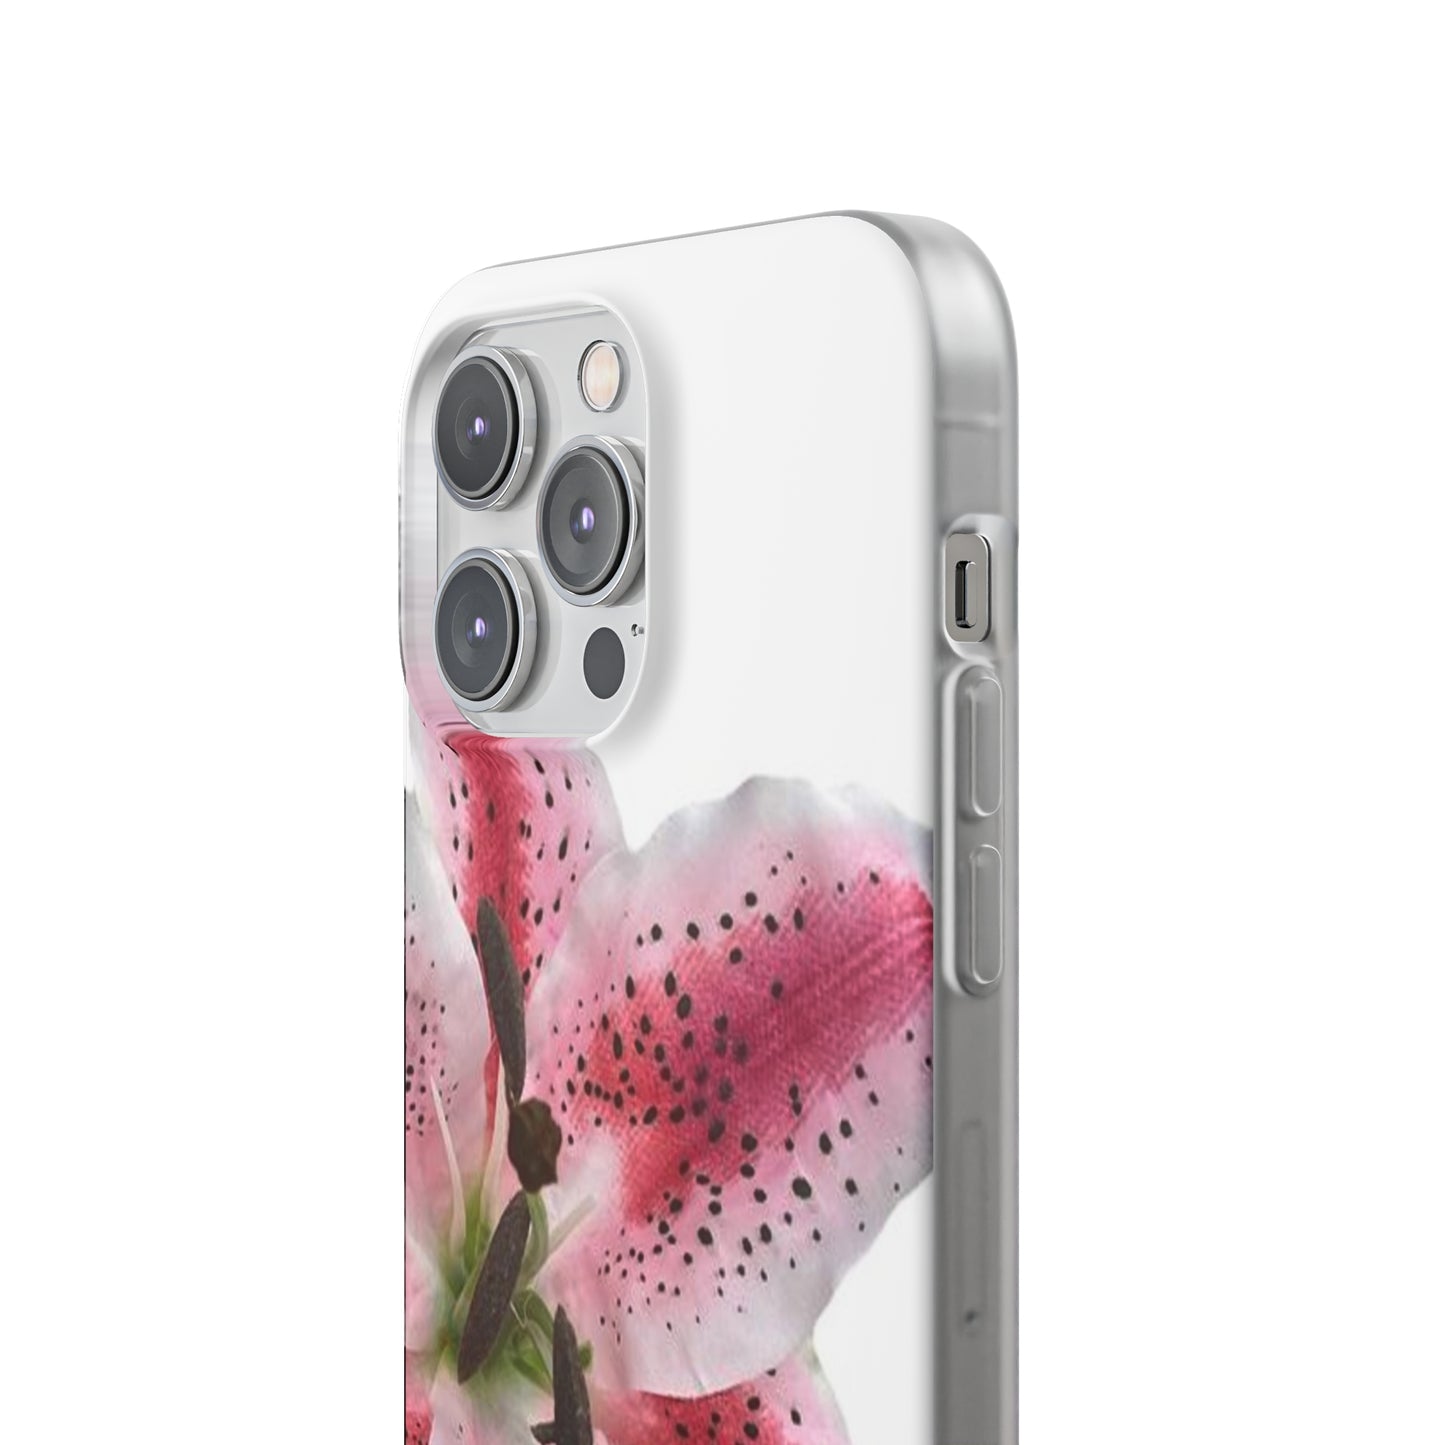 Pink Flower Case